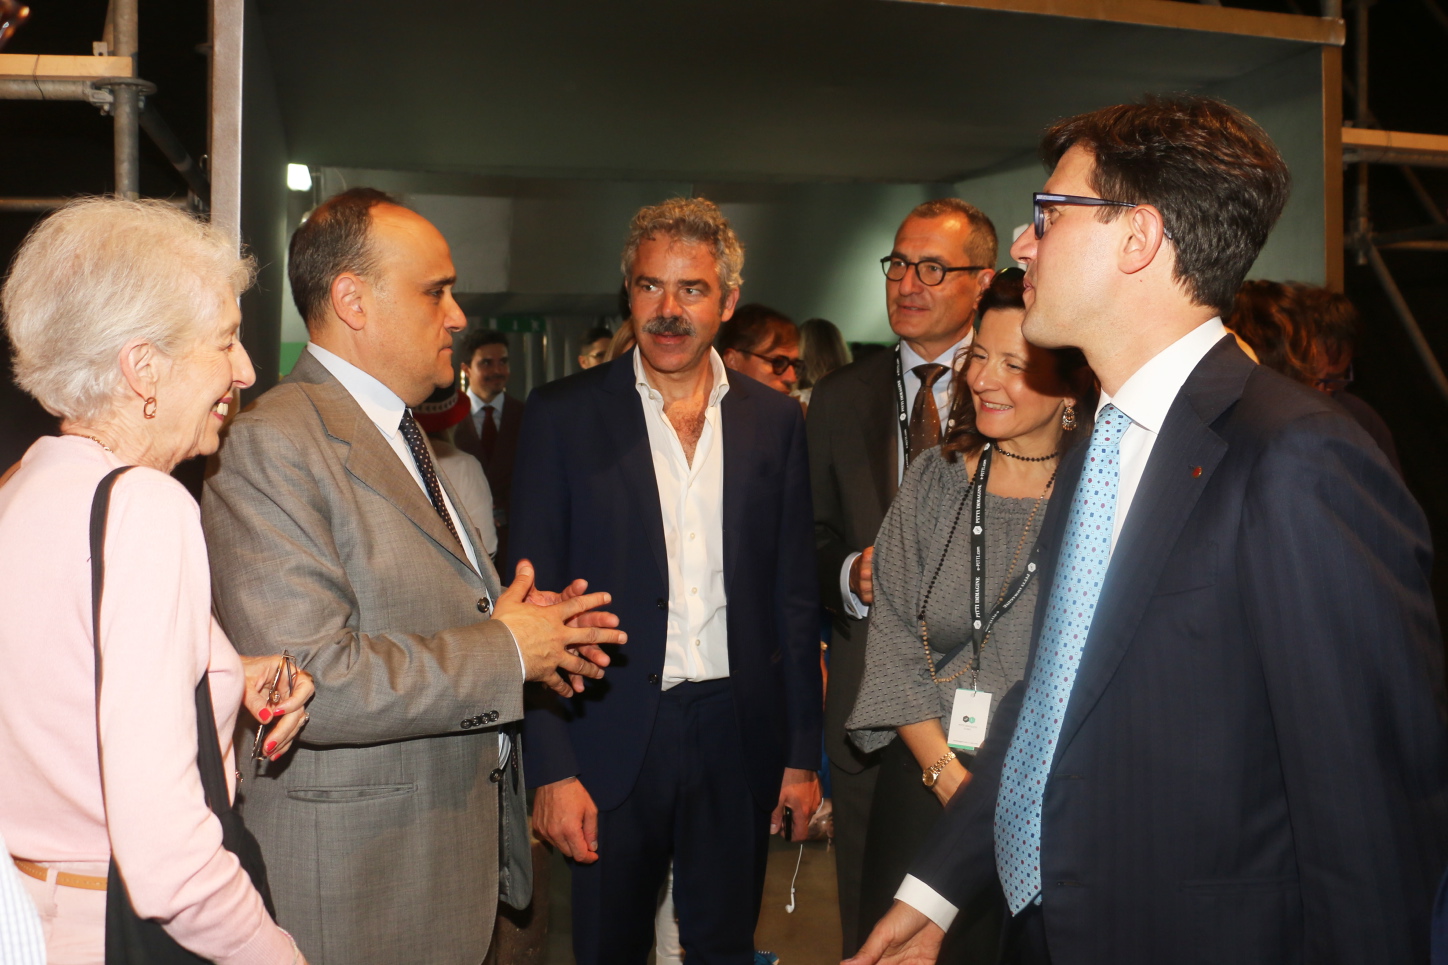 Il sindaco Dario Nardella visita Pitti uomo 2018 con il ministro Alberto Bonisoli